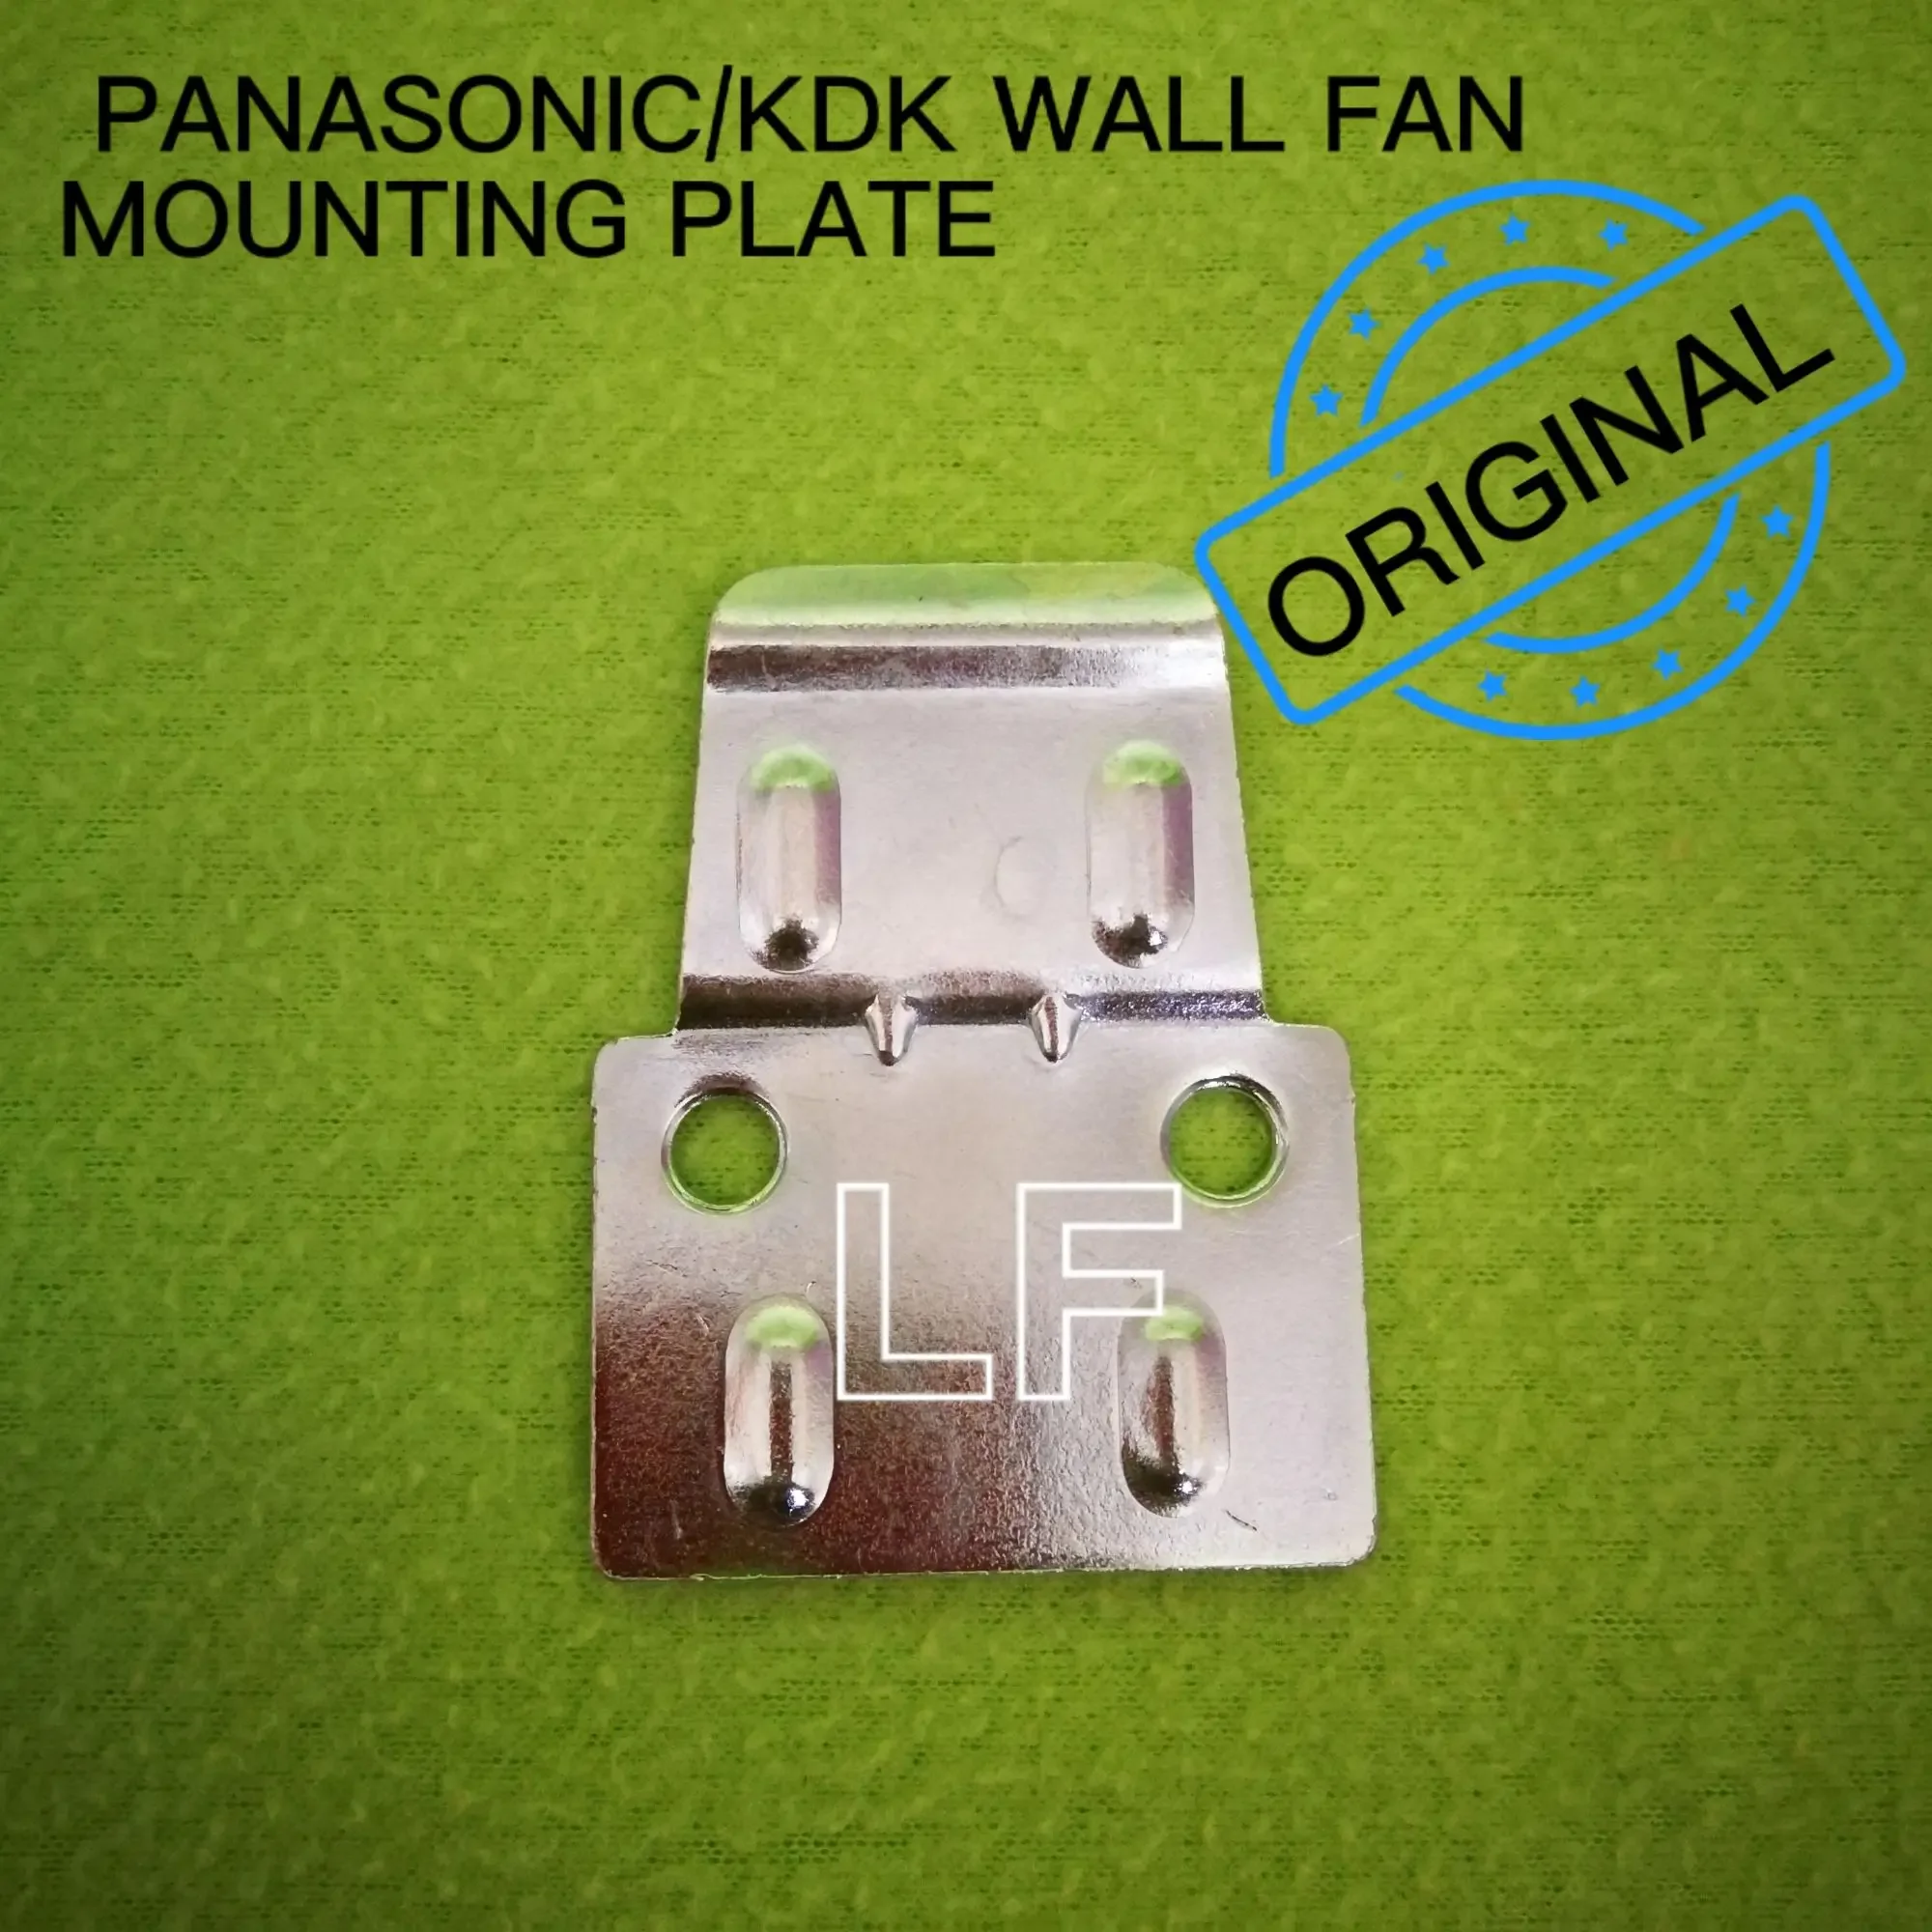 Panasonic / KDK wall fan bracket mounting plate (original)